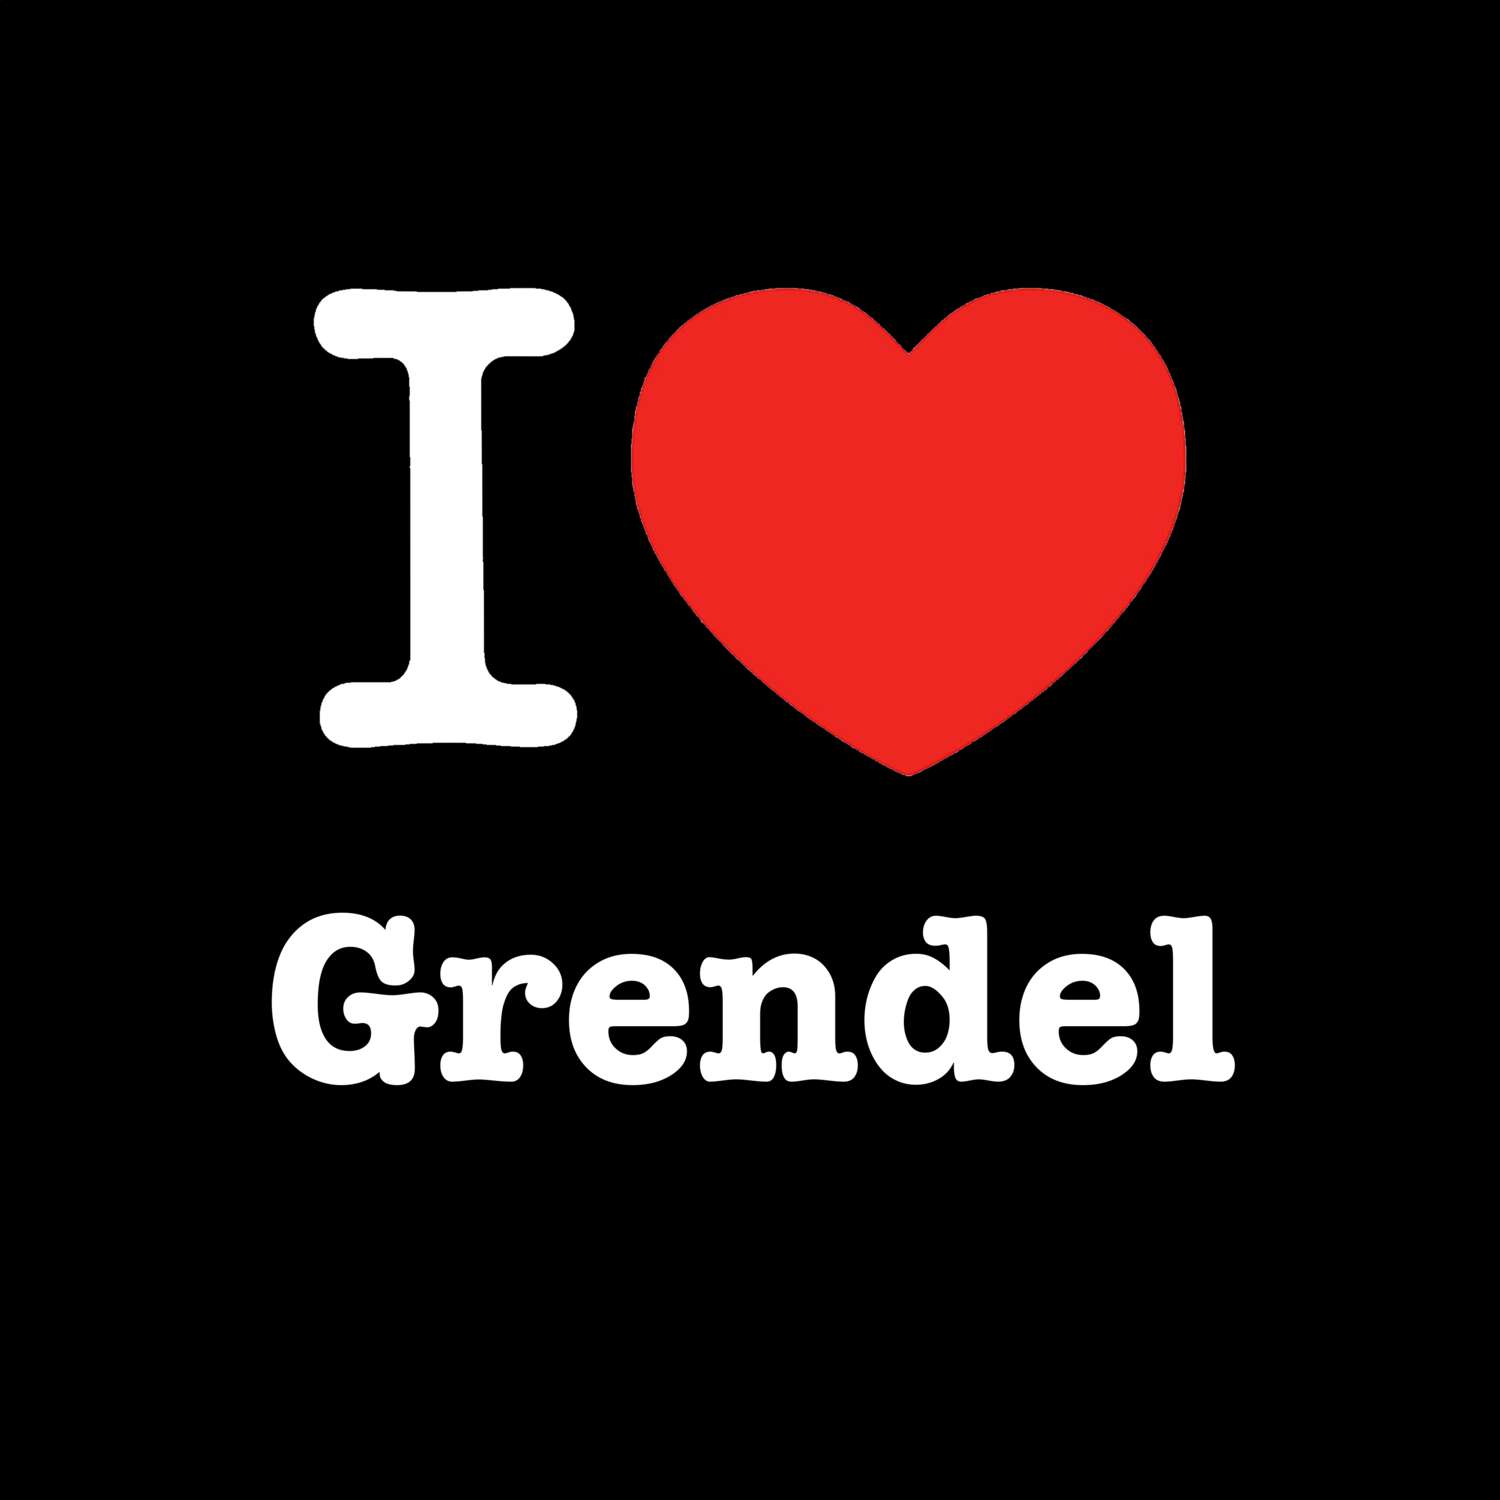 Grendel T-Shirt »I love«